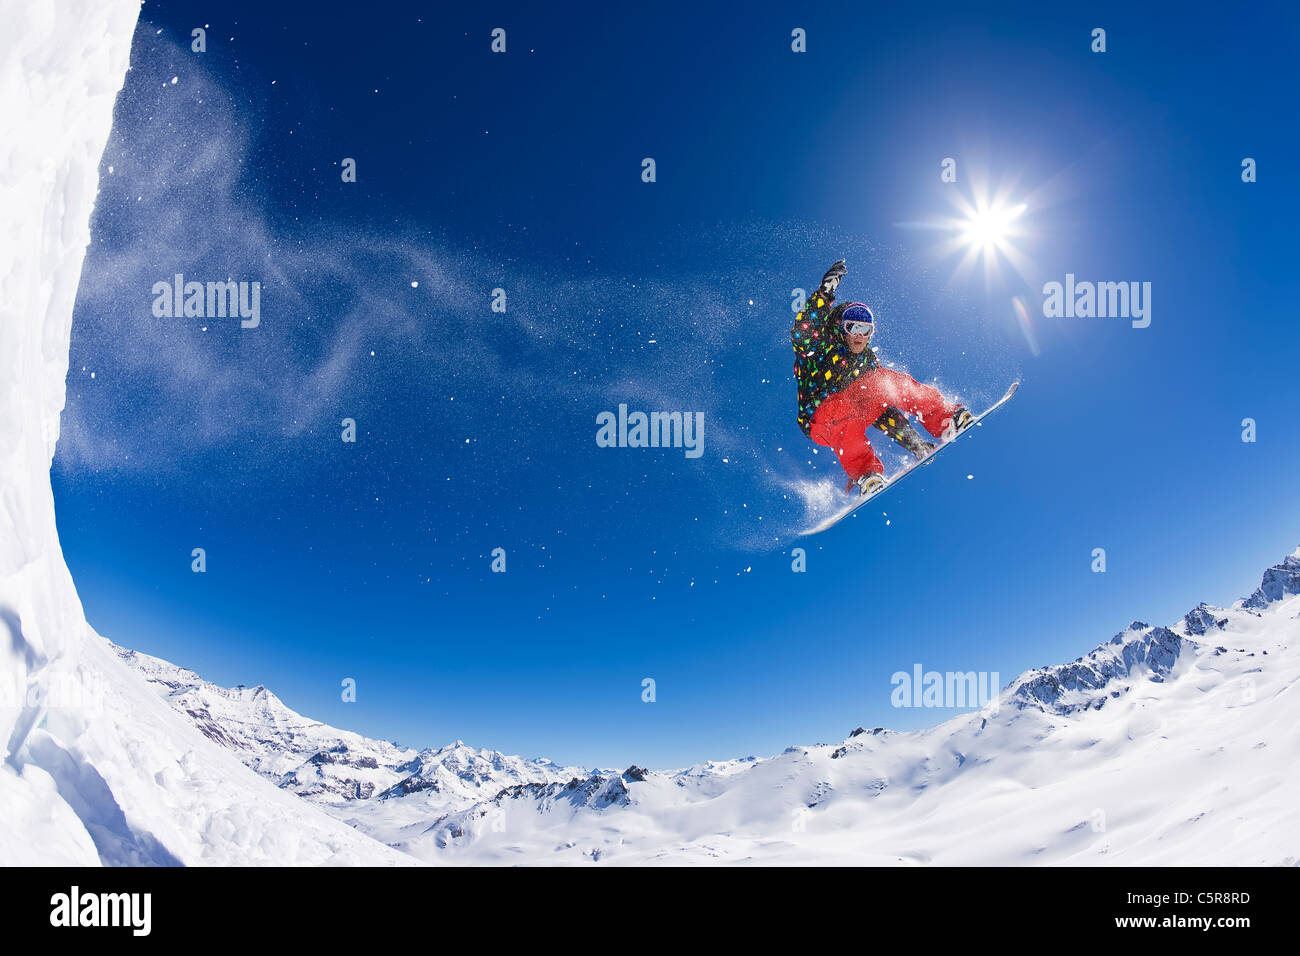 Un snowboarder volant au-dessus de pics couverts de neige. Banque D'Images